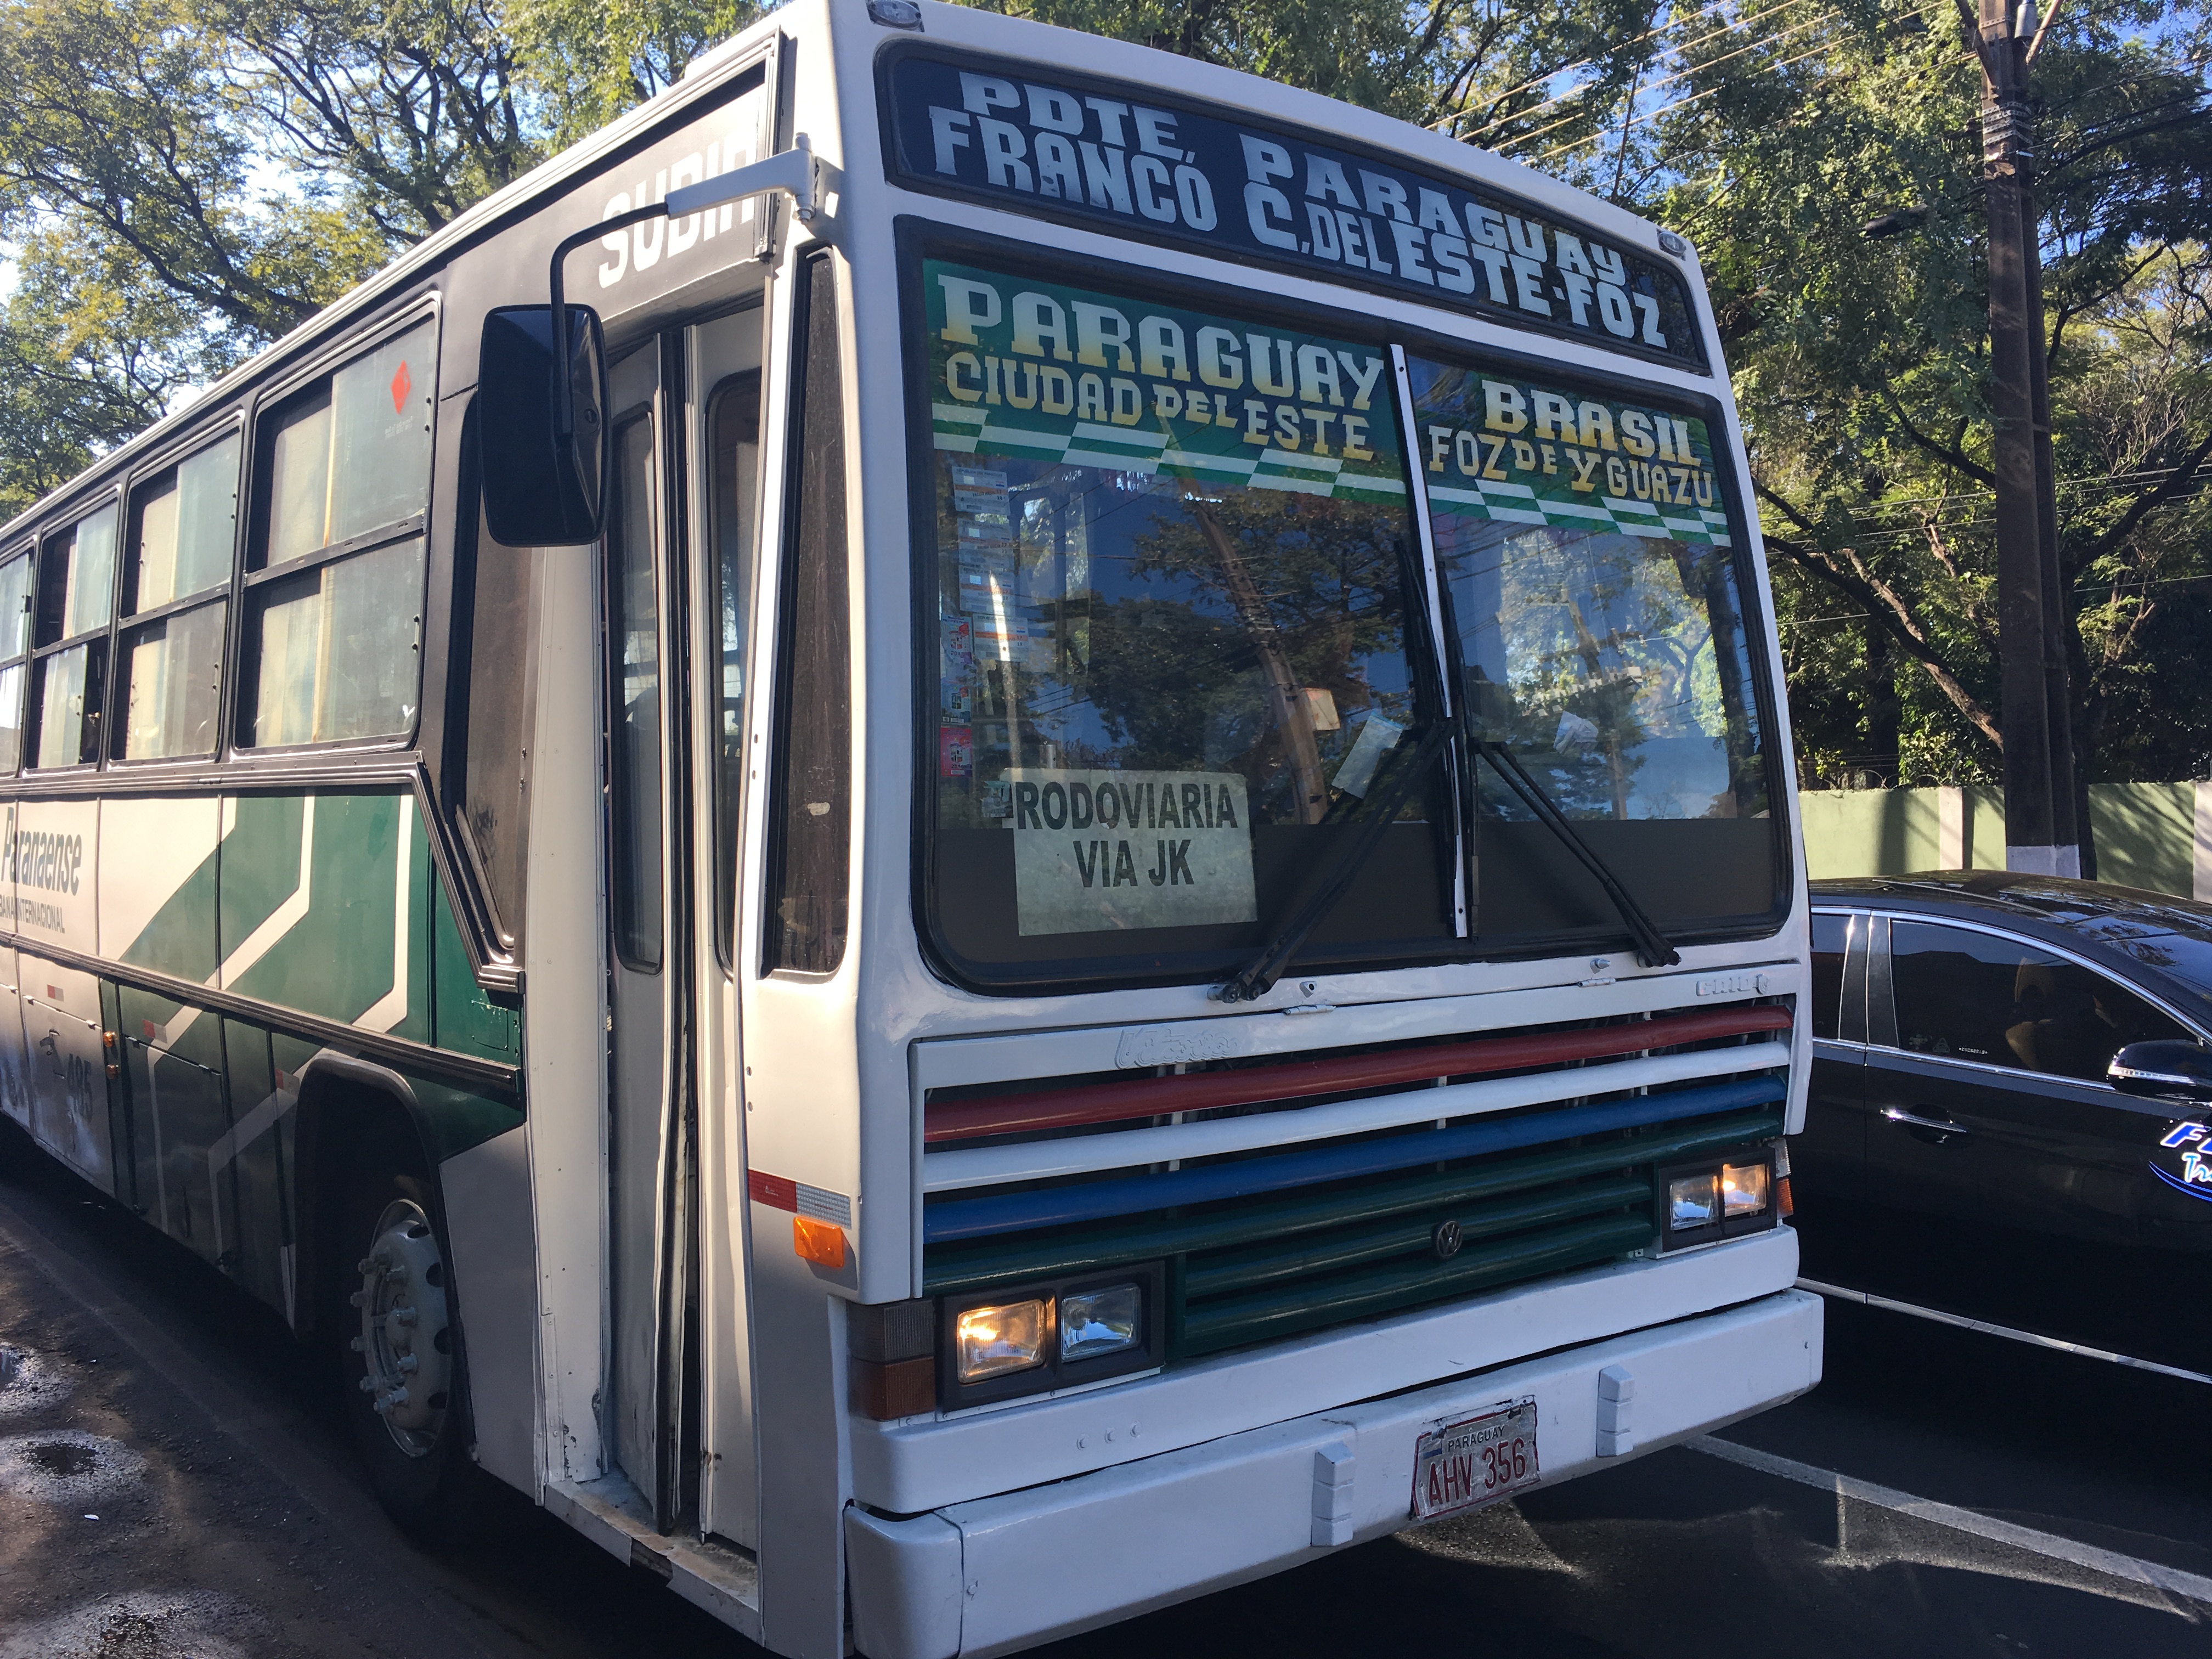 The local bus that runs between Foz do Iguacu and Ciudad del Este